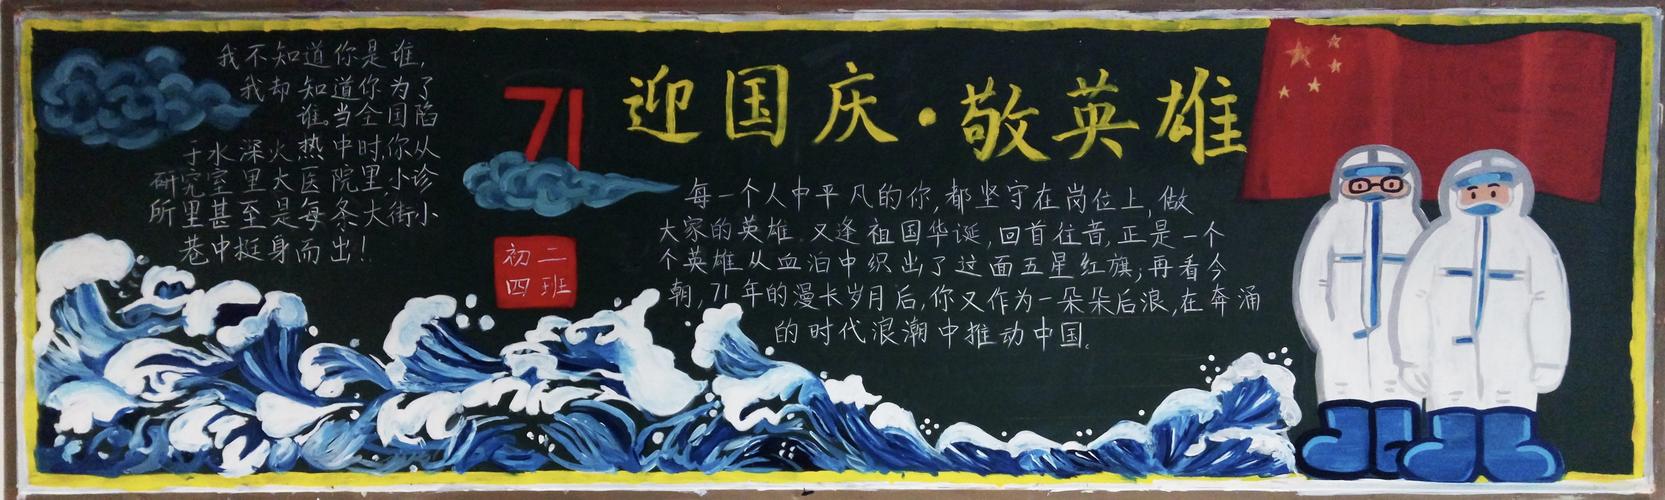 二一校区十月优秀黑板报展示 写美篇  在庆祝新中国成立71年华诞之际